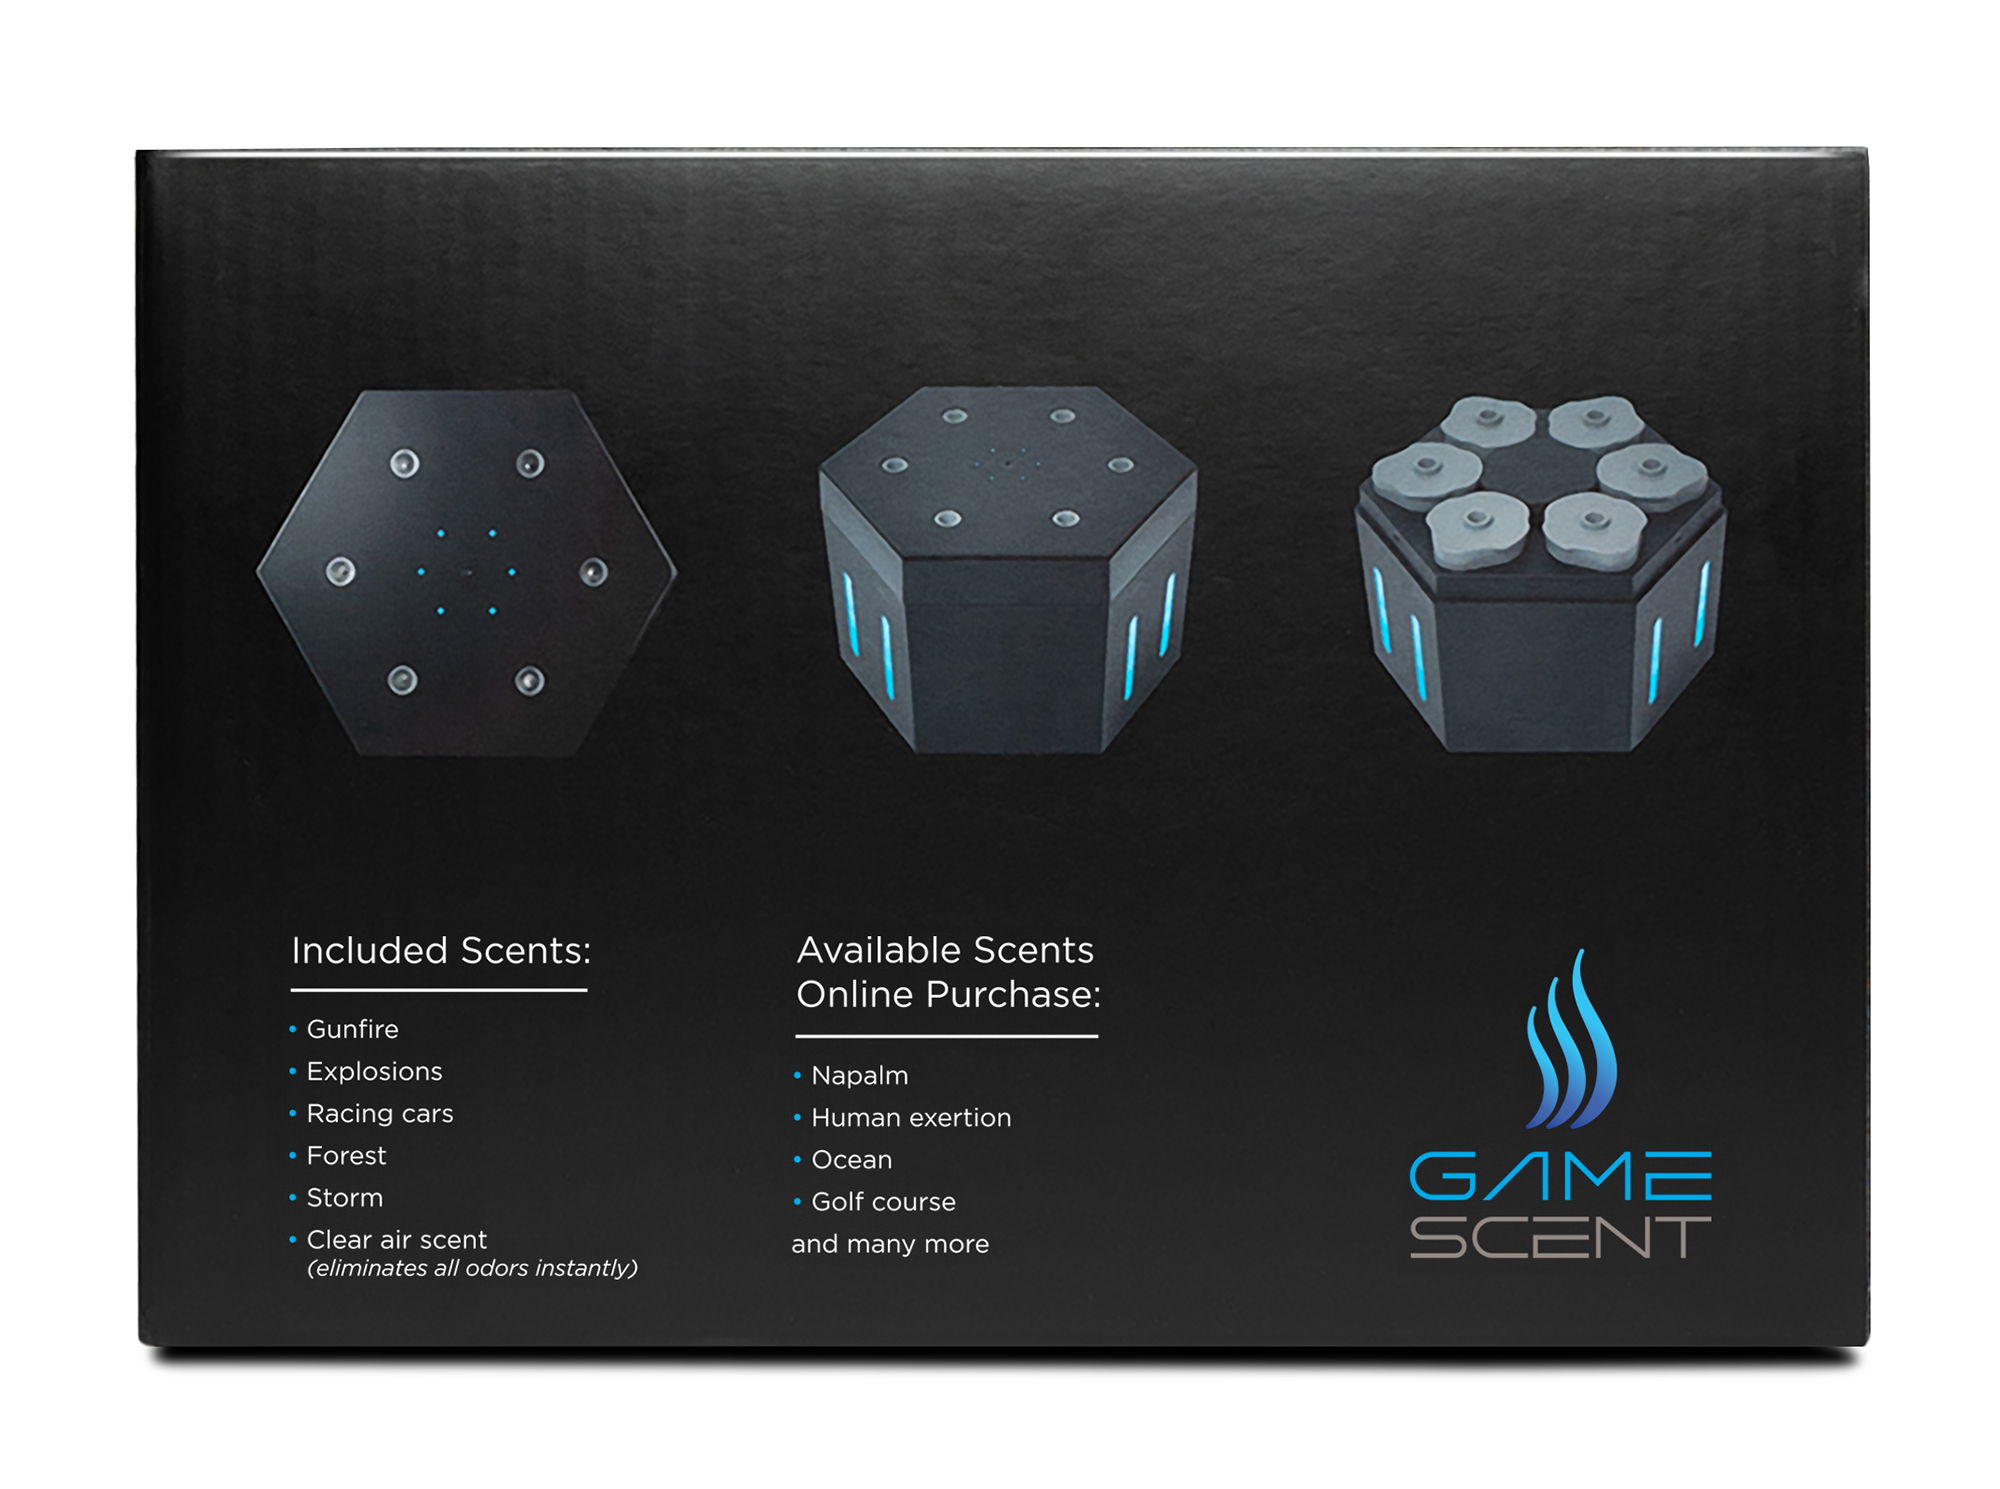 GameScent promo image - box side